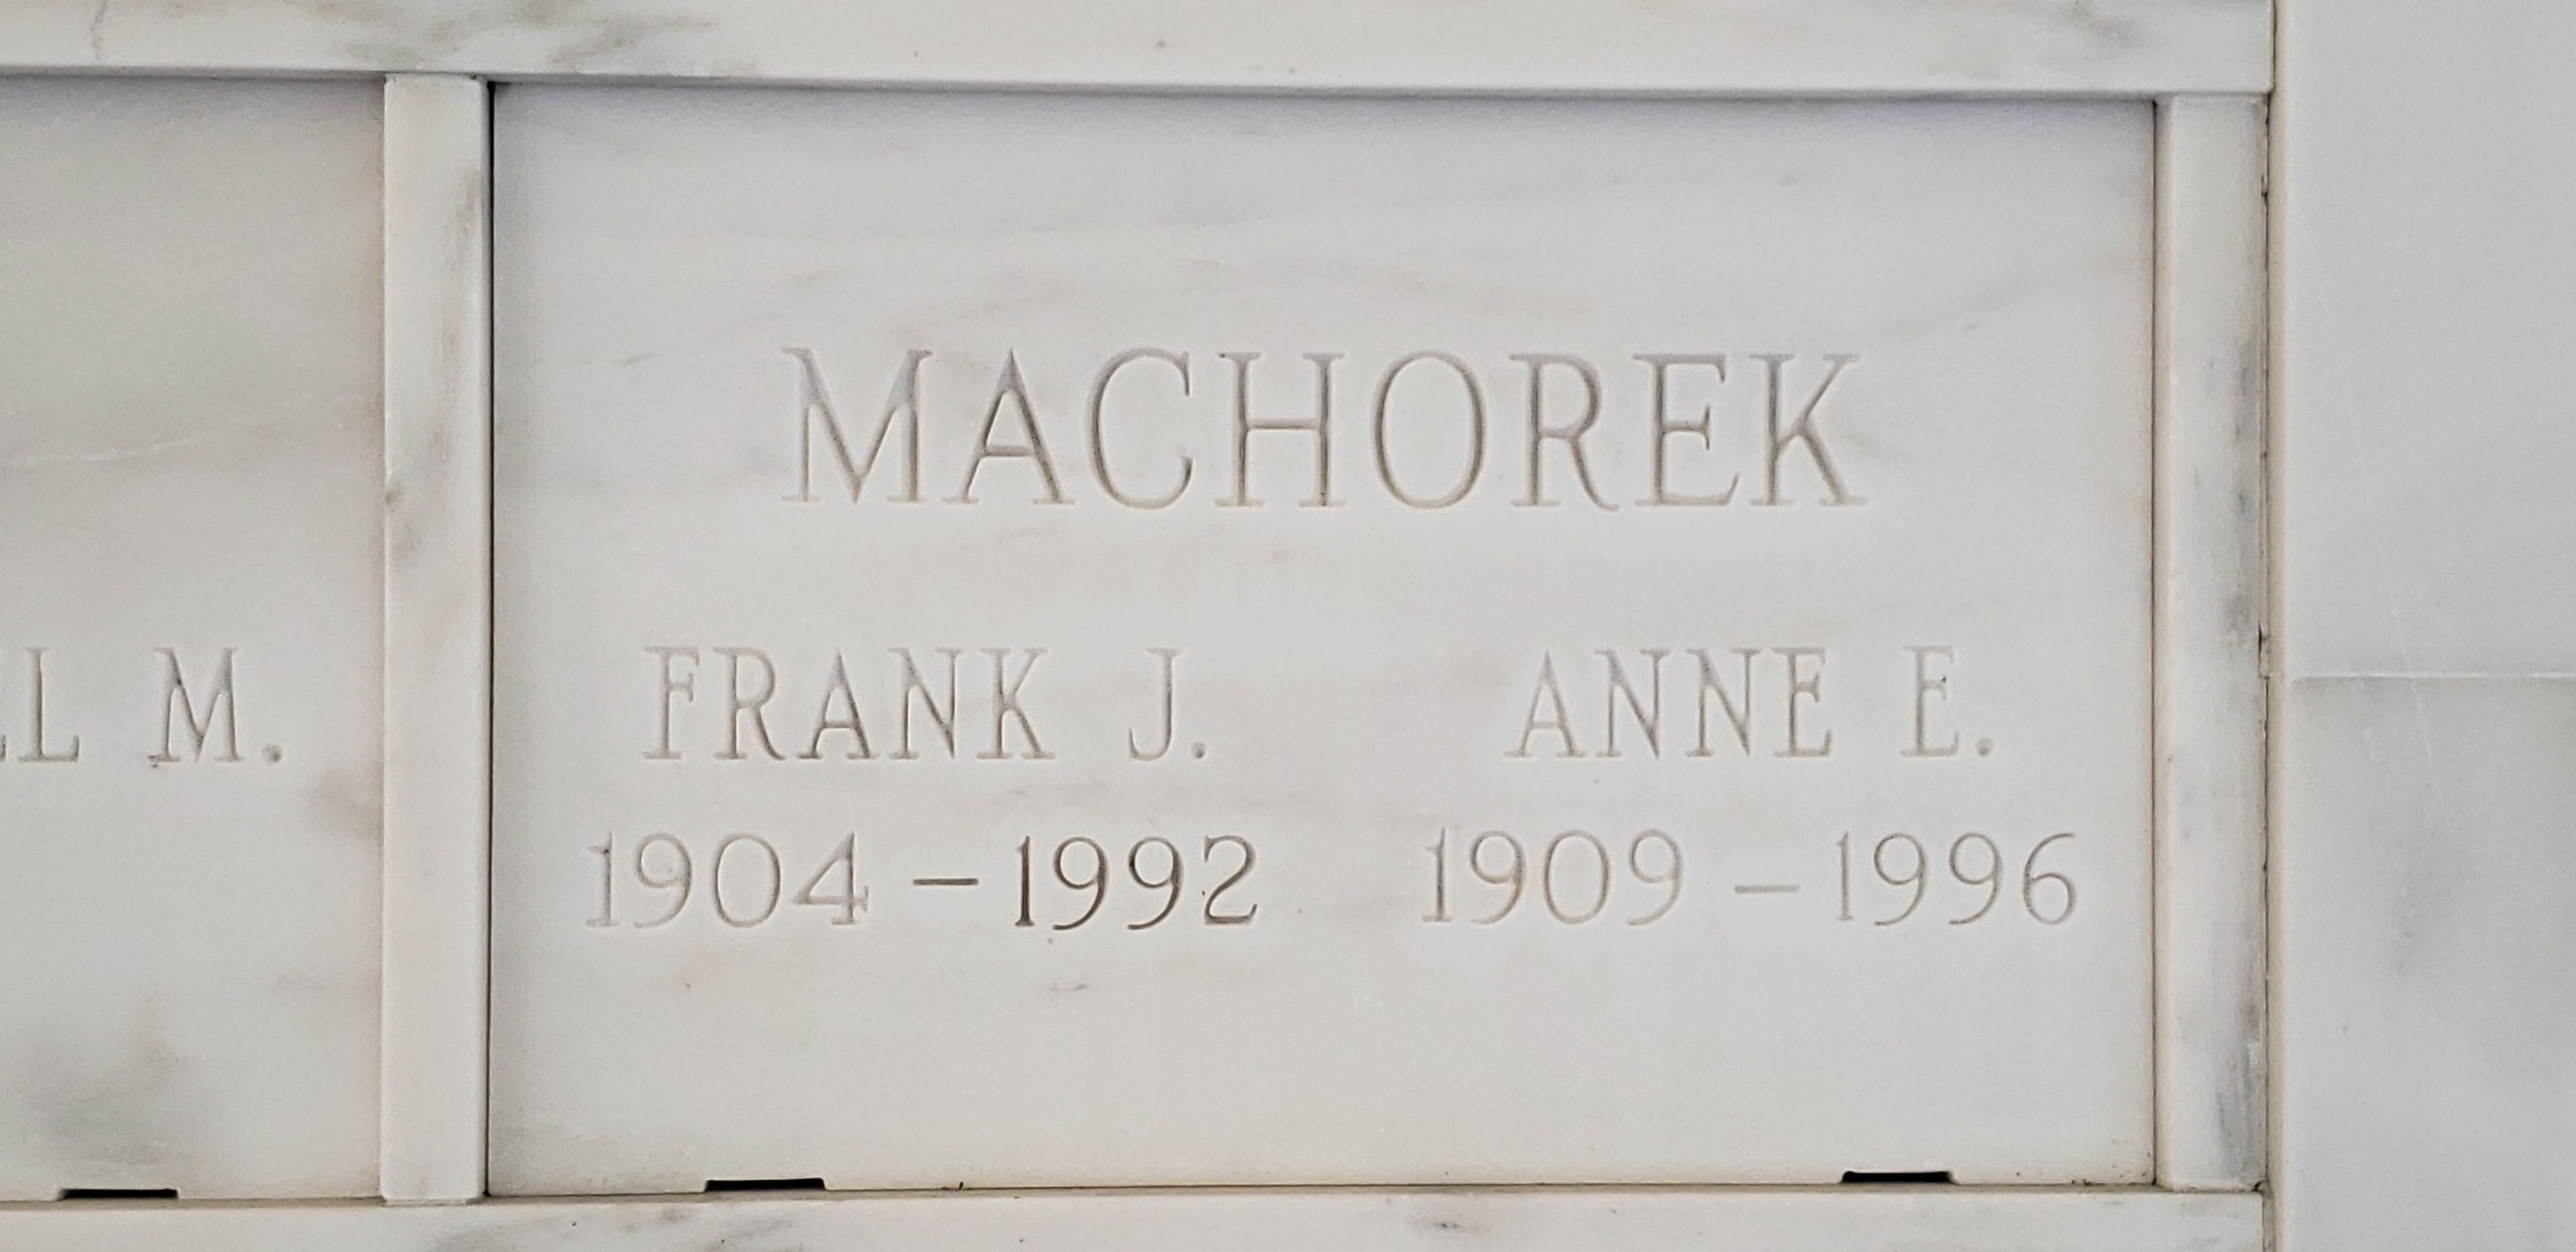 Frank J Machorek